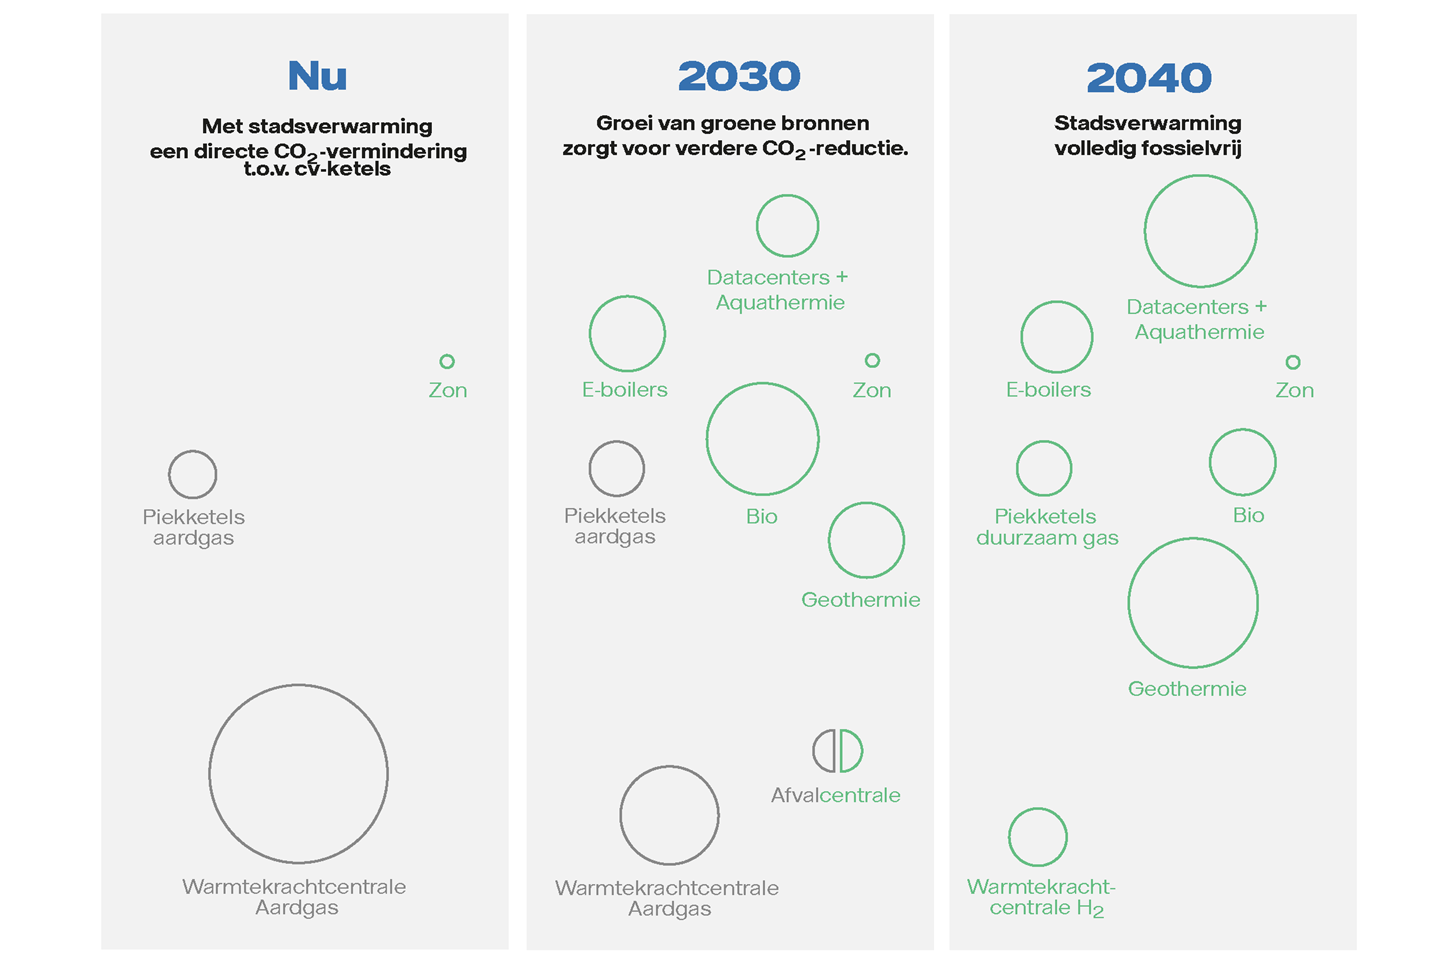 Routekaart van de warmtebronnen die we tot en met 2040 willen gebruiken om onze stadswarmte in Almere fossielvrij te krijgen